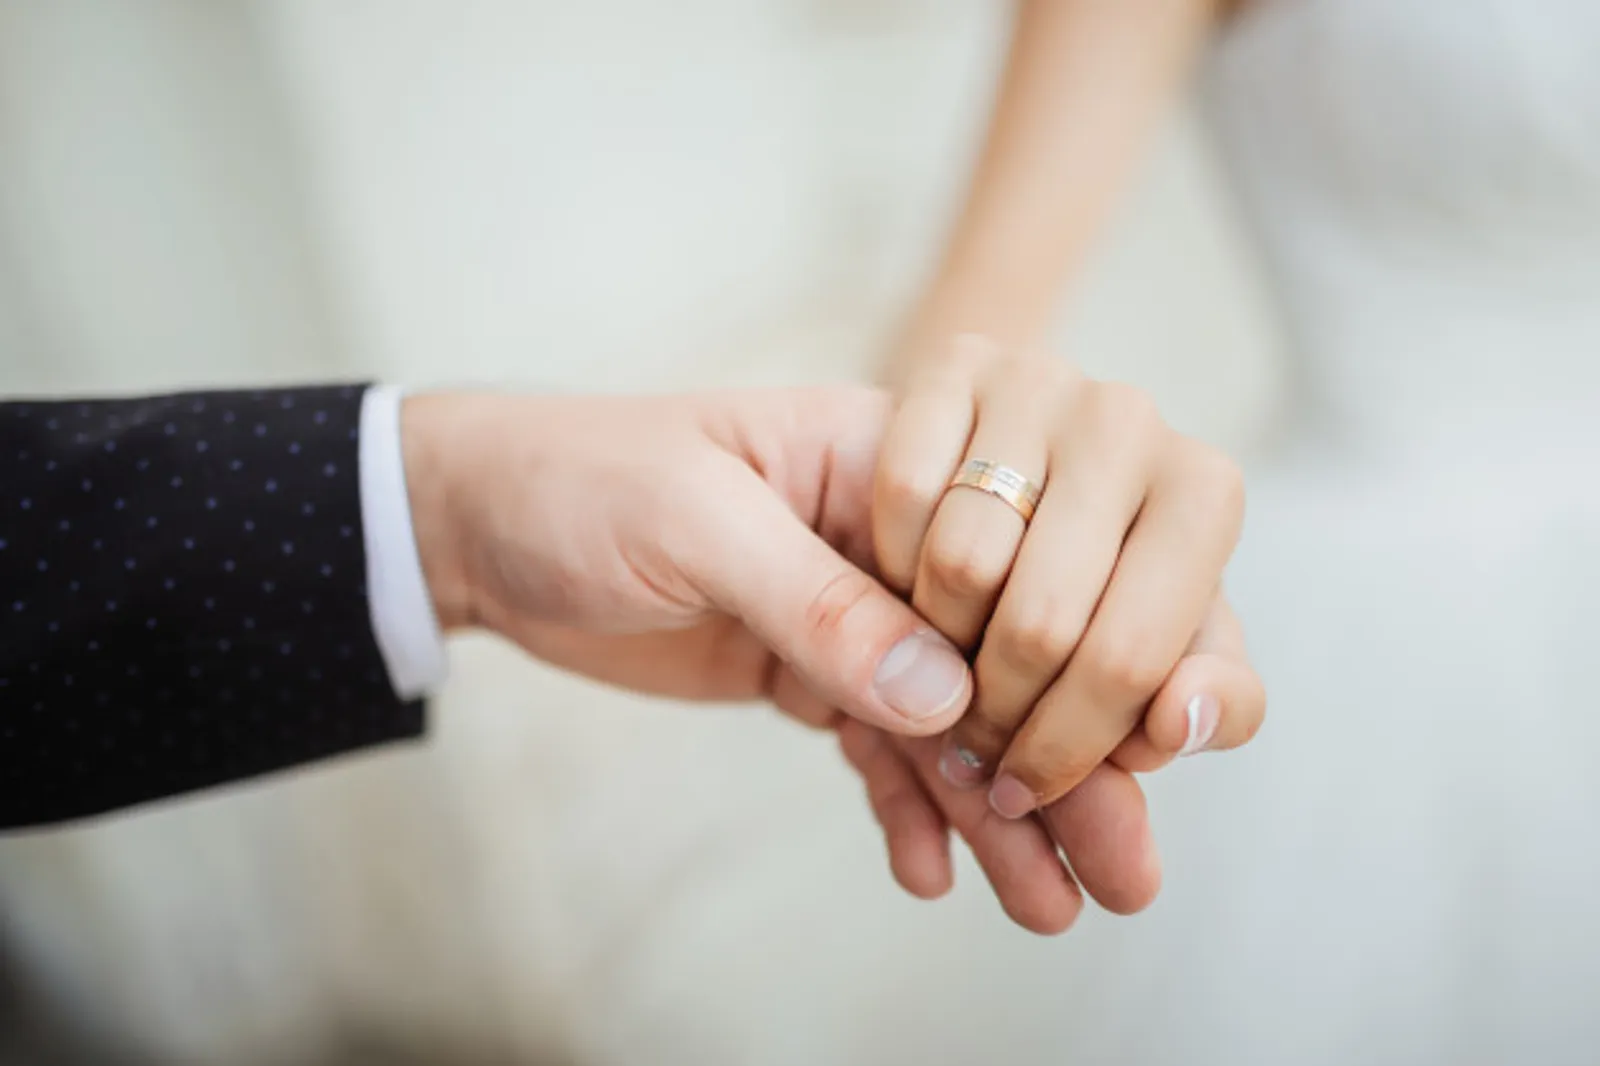 6 Pertanyaan Penting yang Harus Kamu Tanya ke Pasangan Sebelum Menikah